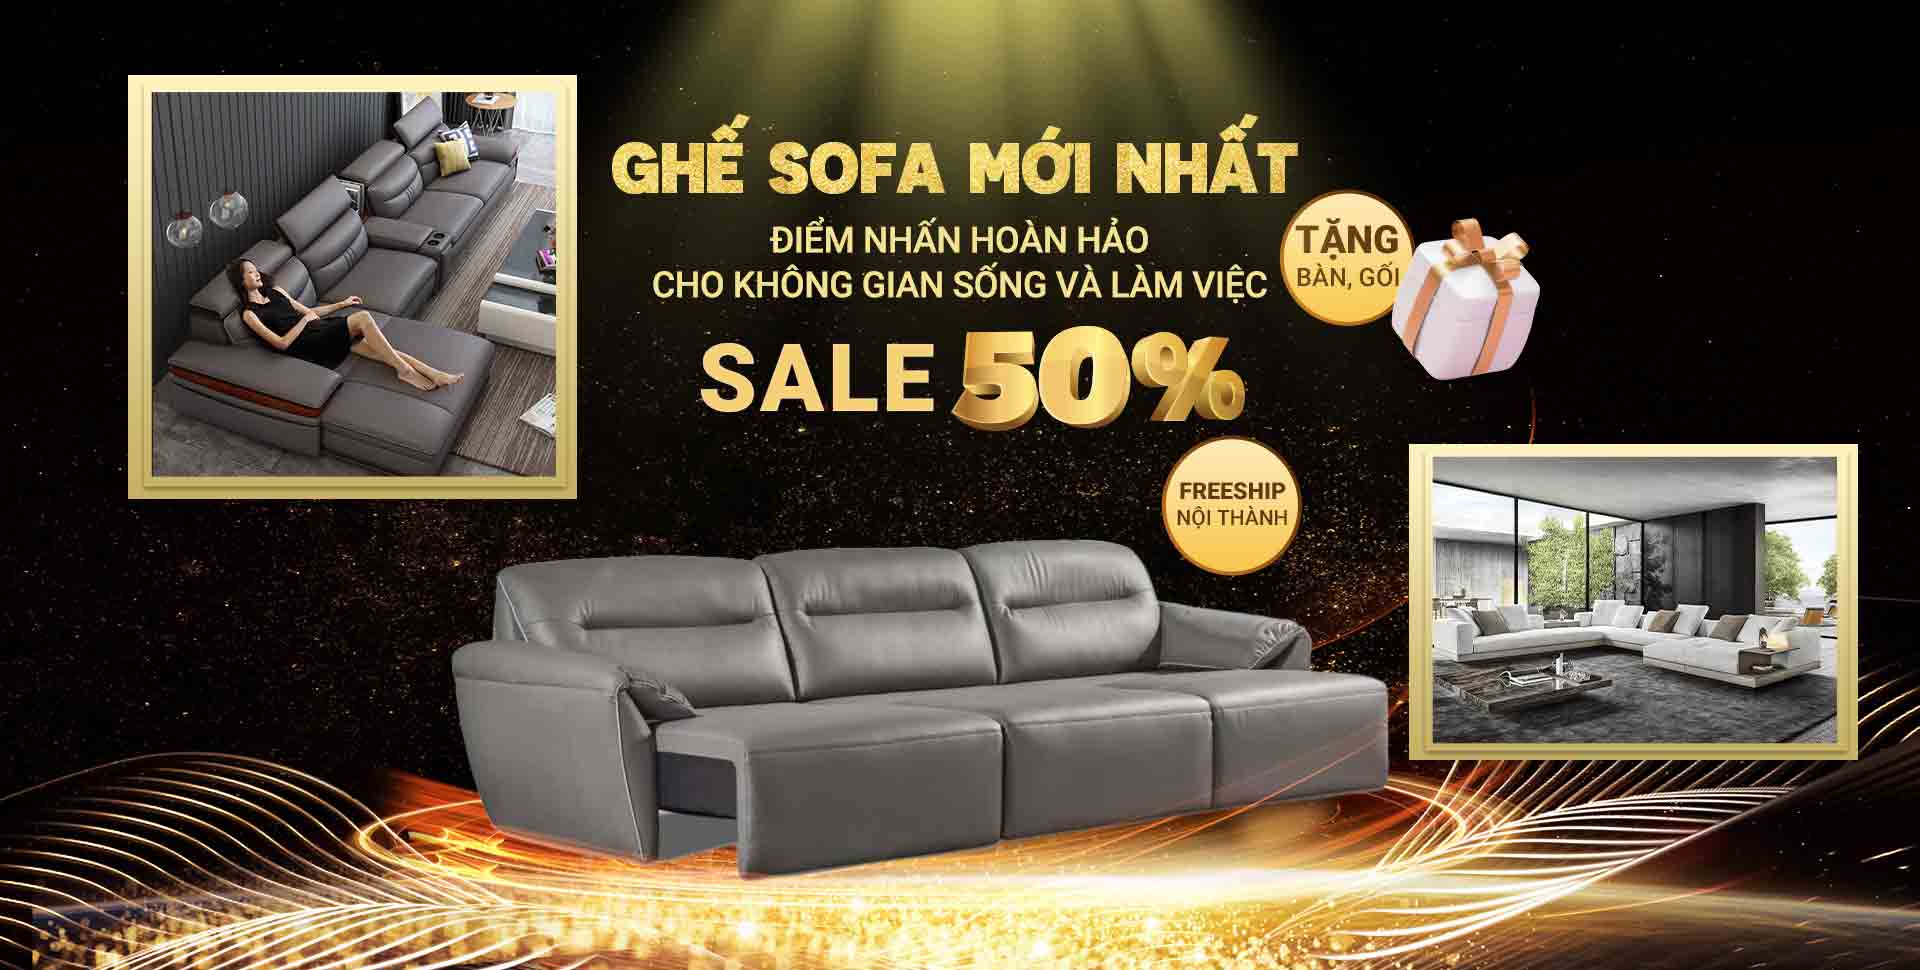 500 Mẫu Ghế Sofa Đẹp Mới Nhất, Xứng Đáng Tìm Kiếm Mua Ngay